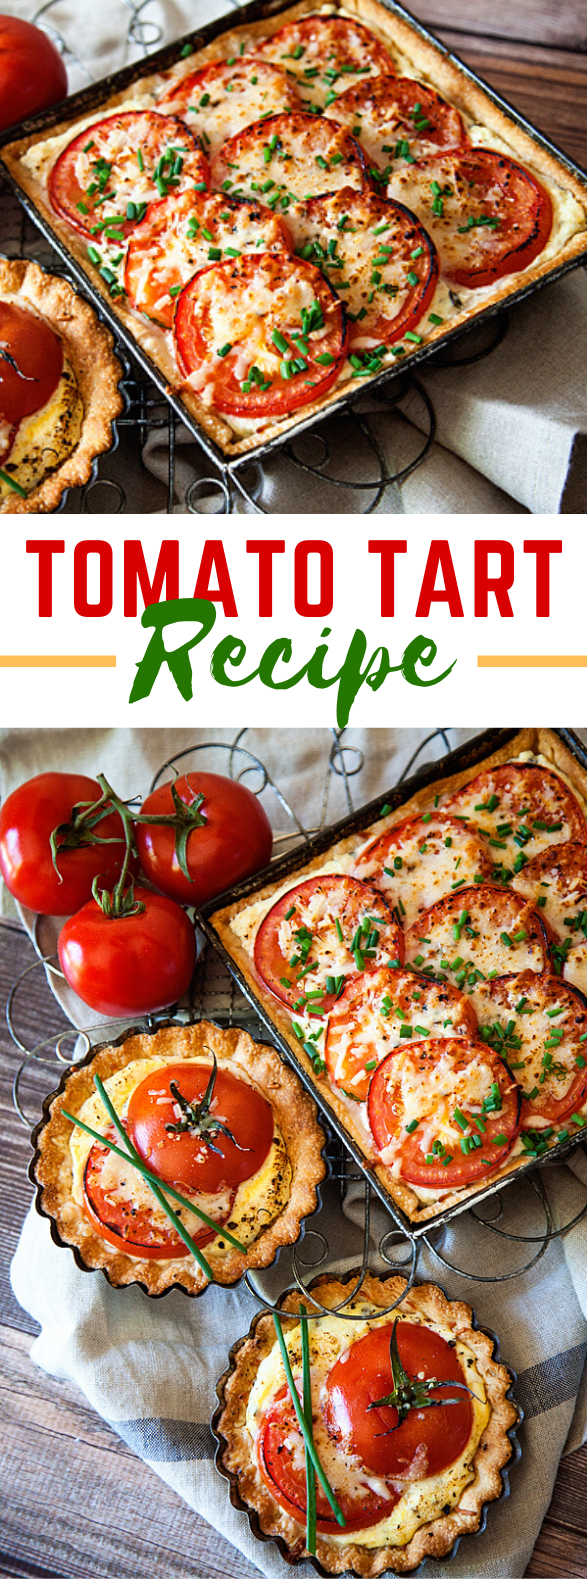 Tomato Tart Recipe #vegetarian #baking